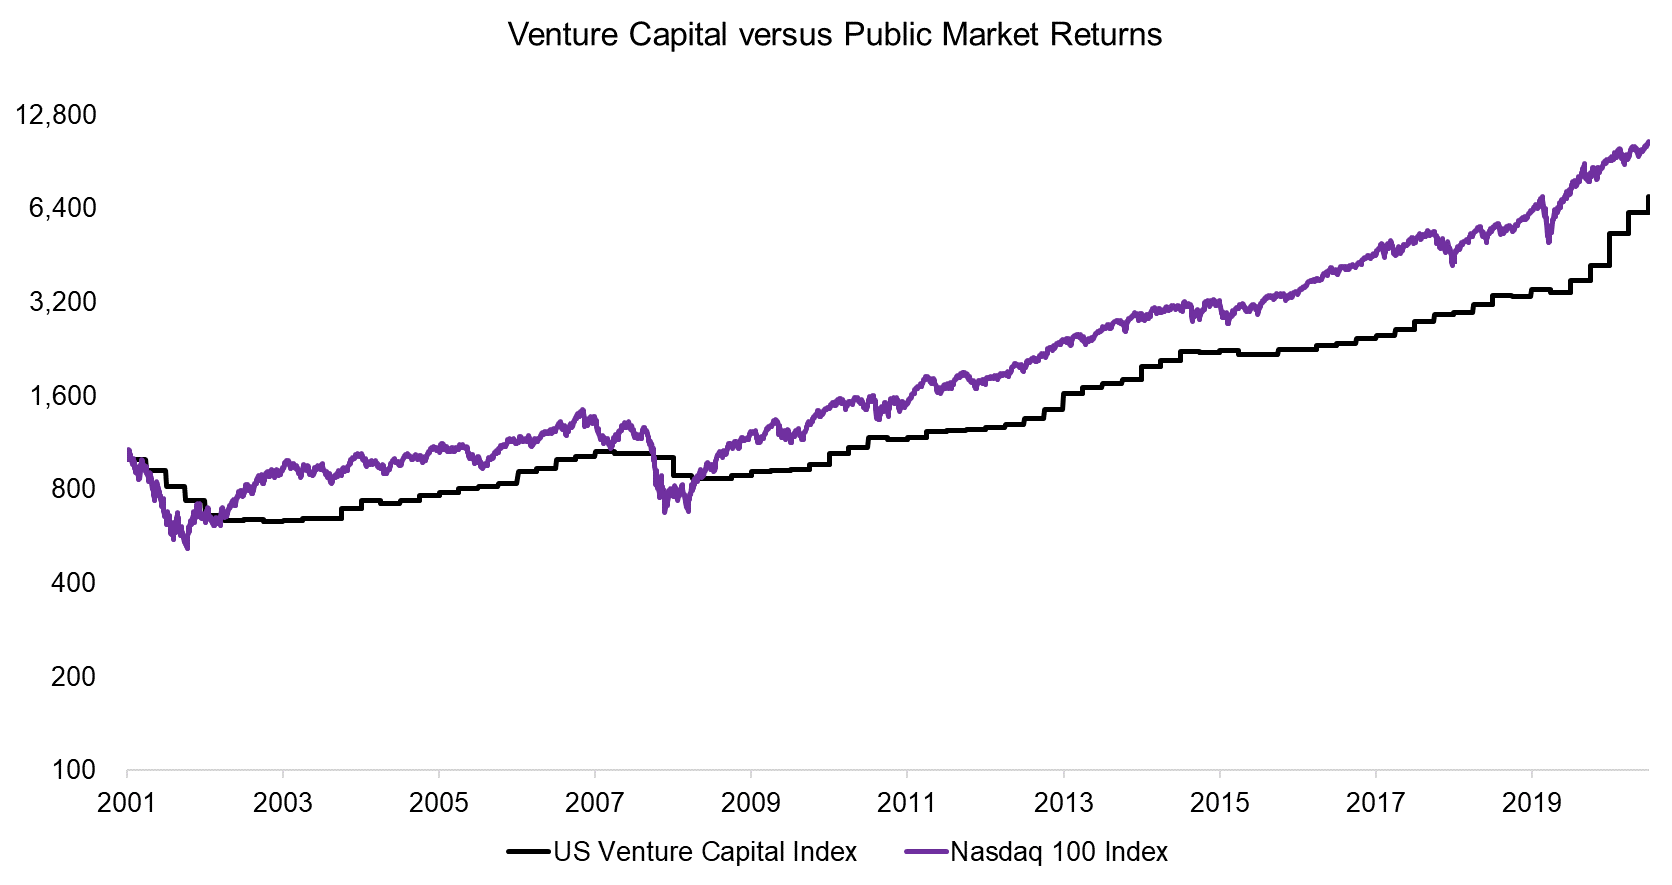 Venture Capital versus Public Market Returns